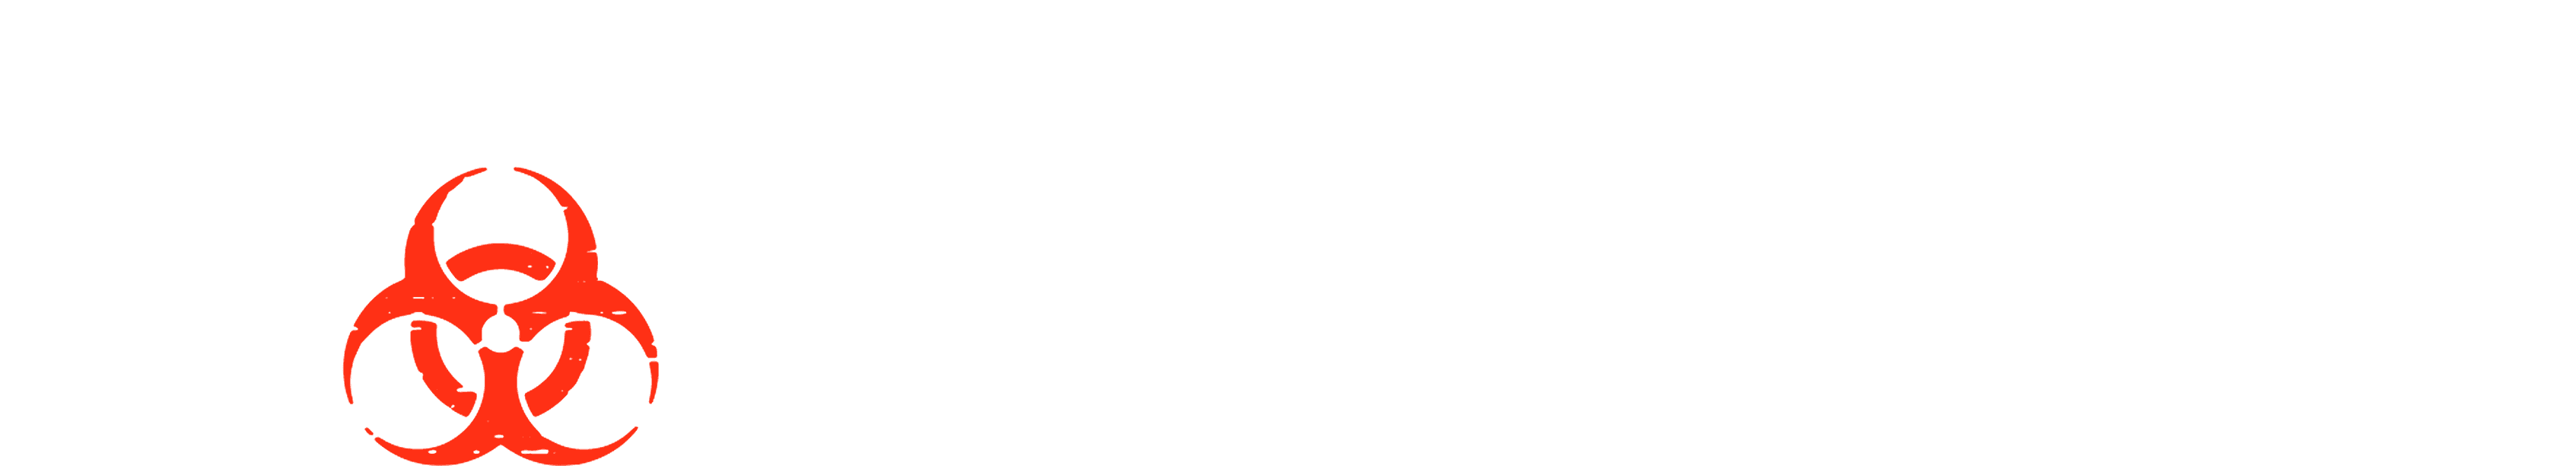 The Hot Zone logo